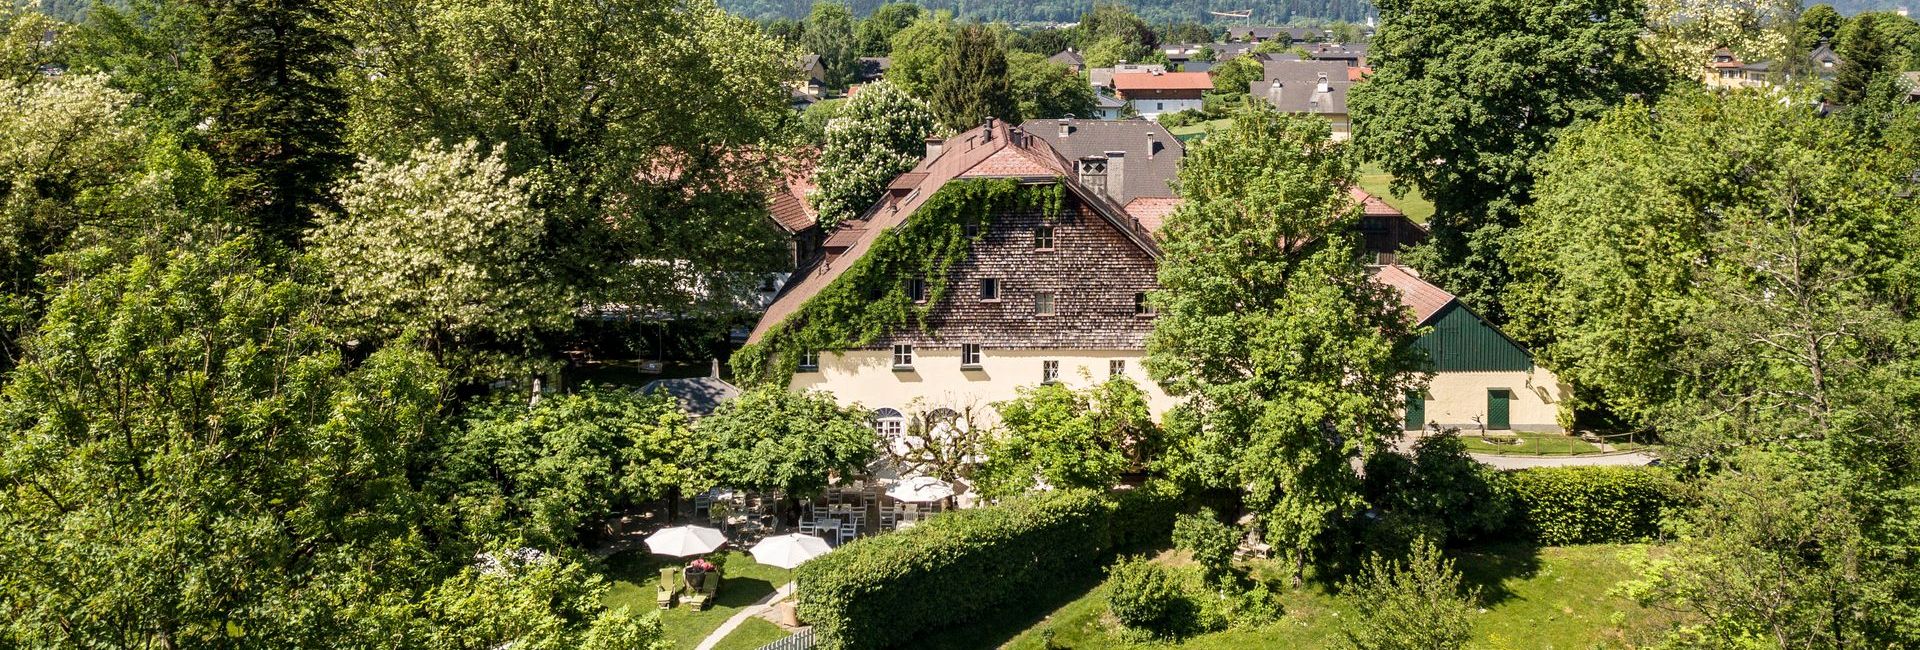 Air view of Schlosswirt zu Anif with garden near Salzburg